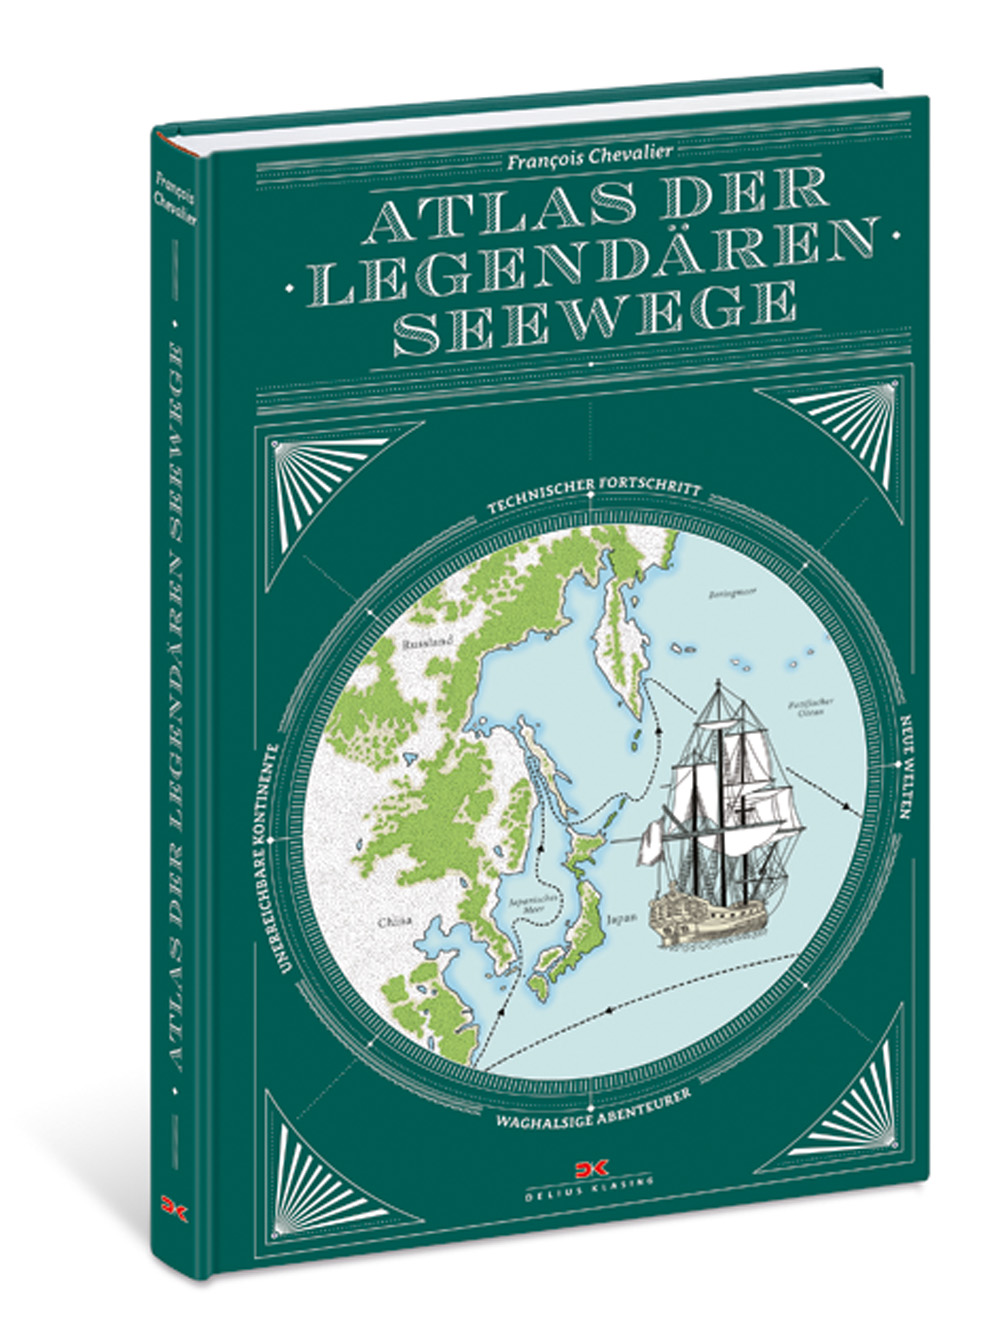 Buchrezension von Atlas der legendären Seewege von Francois Chevalier aus dem DeliusKlasing Verlag: ein großartig gestaltetes und spannendes Werk.